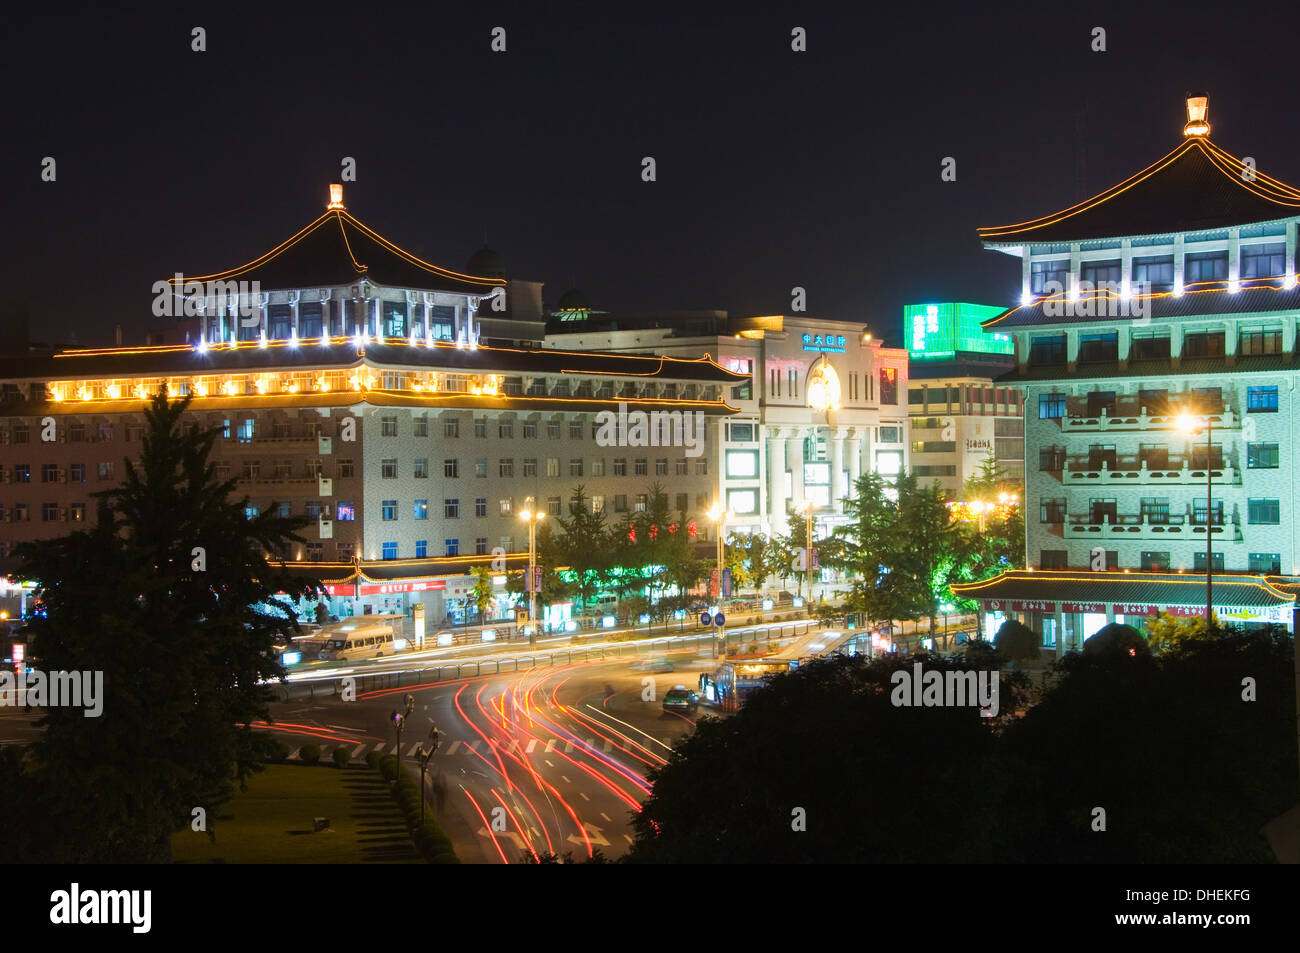 Bâtiment de l'hôtel de style chinois et les lumières de la ville La ville de Xian, Province du Shaanxi, Chine, Asie Banque D'Images